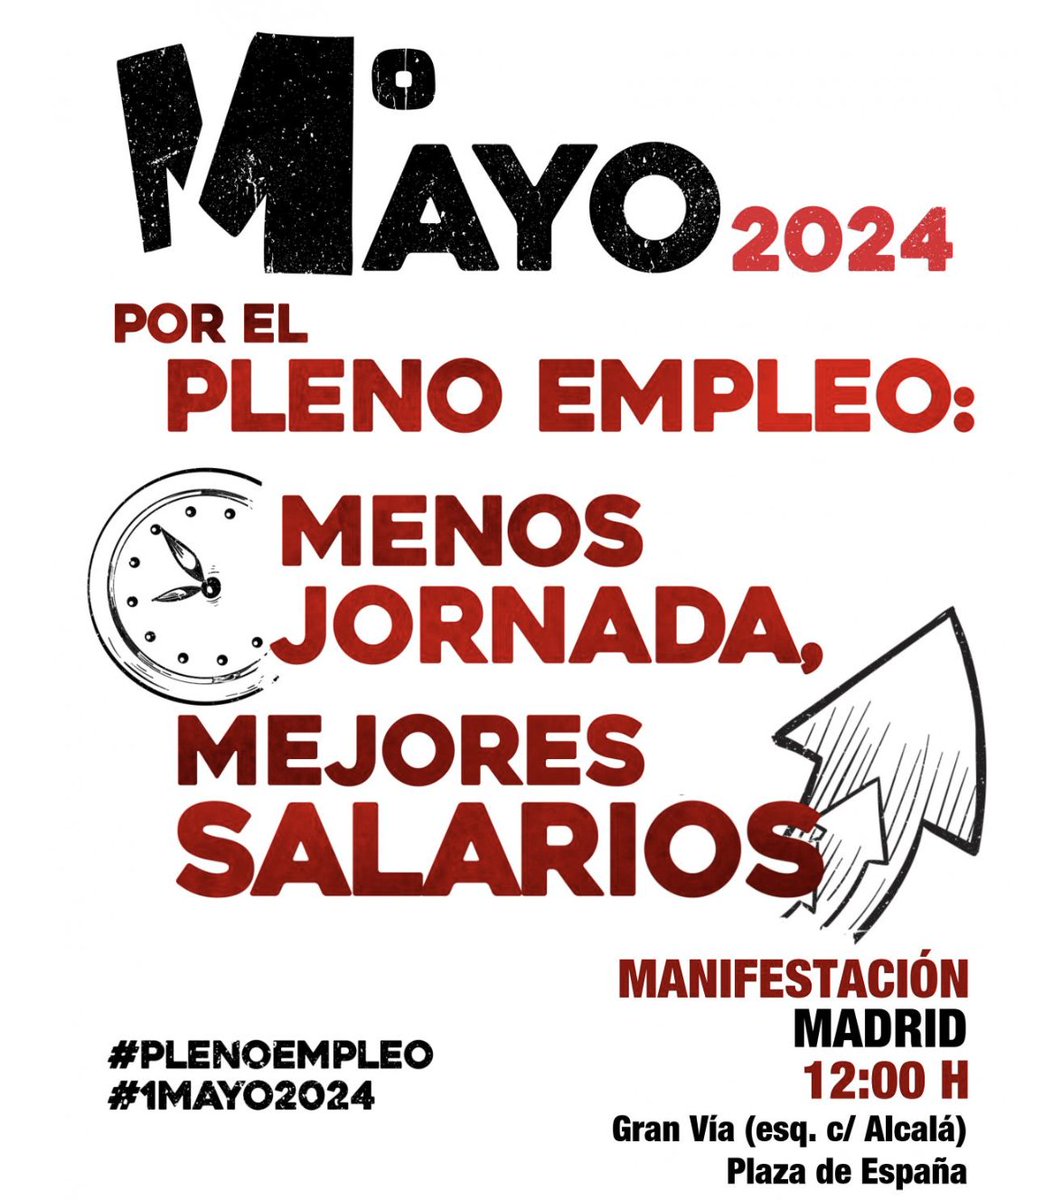 🔴🎥 En Directo desde Madrid #1MCCOO por el #PlenoEmpleo youtube.com/watch?v=uYzk3L…